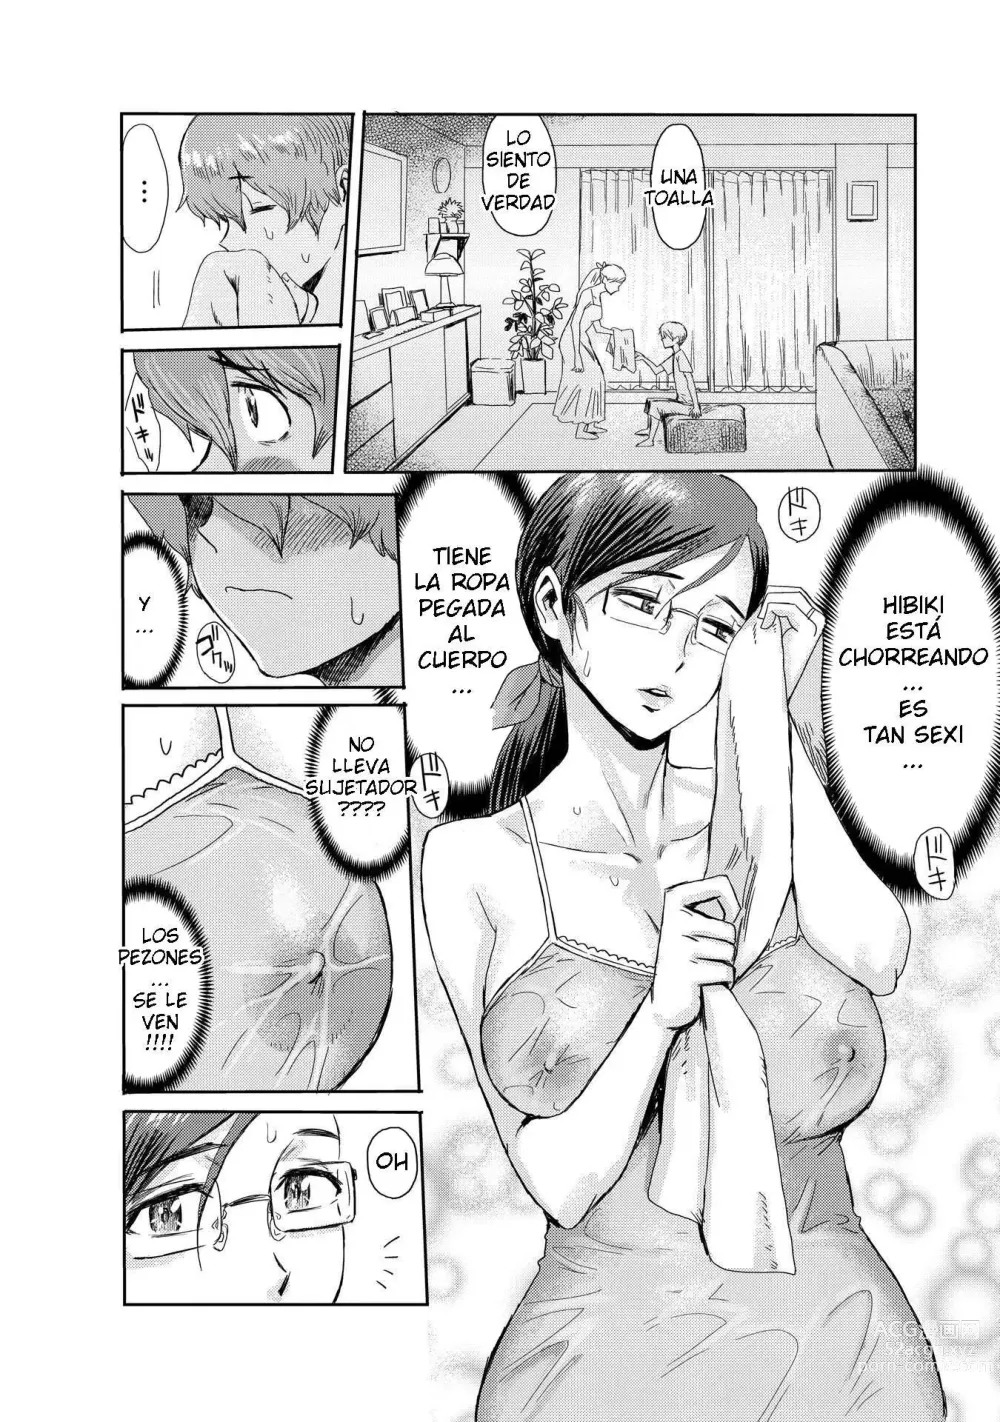 Page 6 of manga Biniku Ensou 2